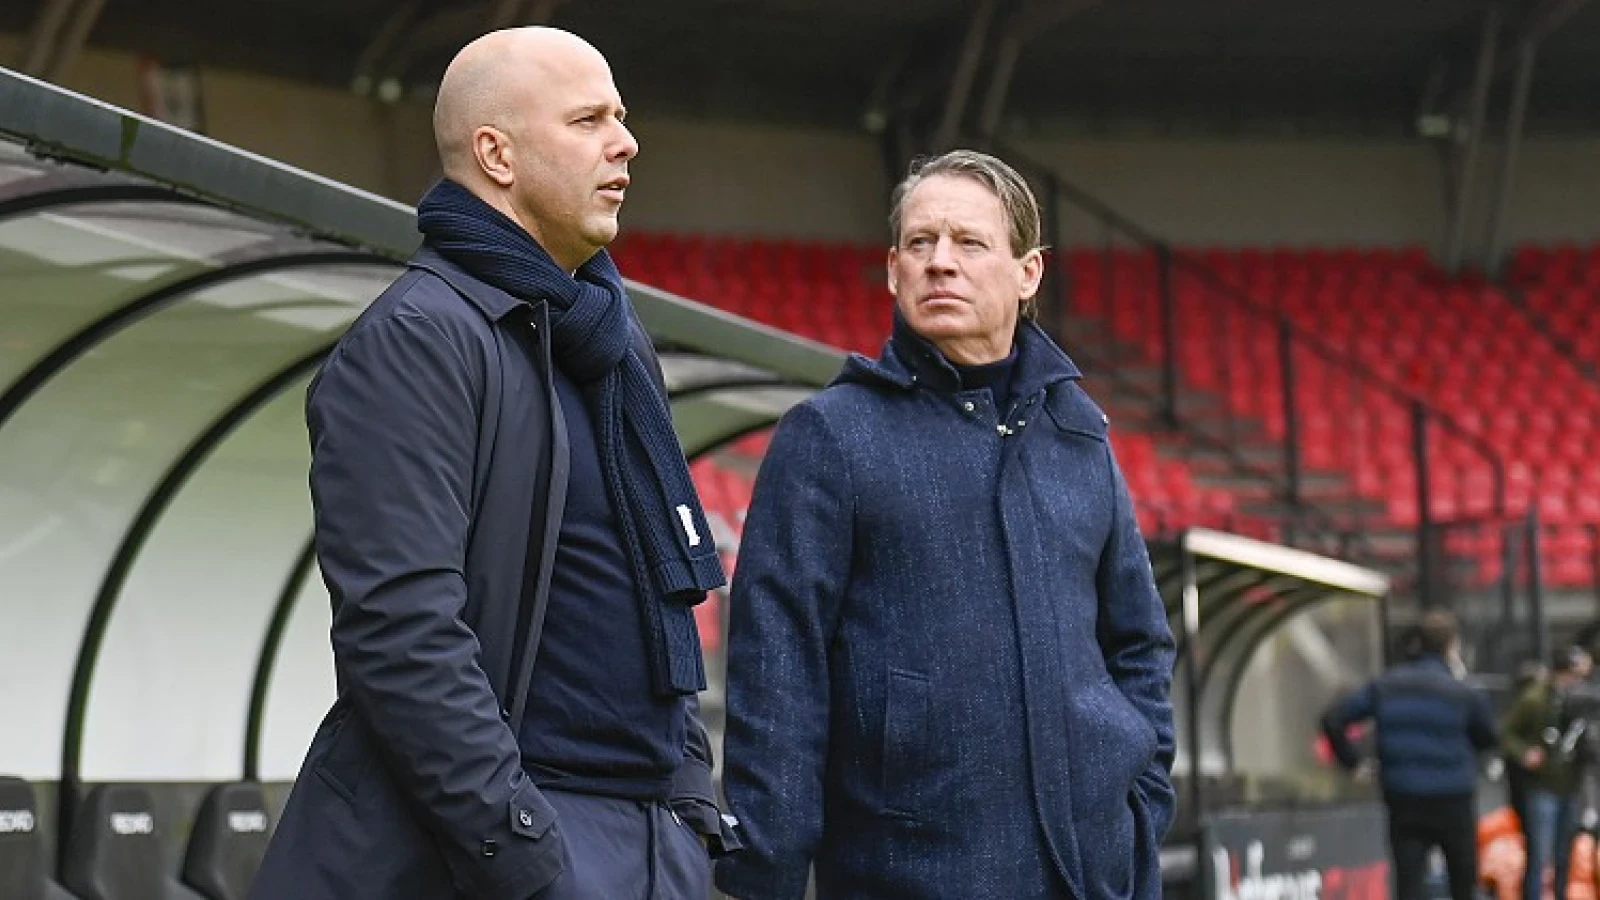 Been juicht komst aanvaller toe: 'In de Eredivisie kun je altijd een keer Europees topscorer worden'